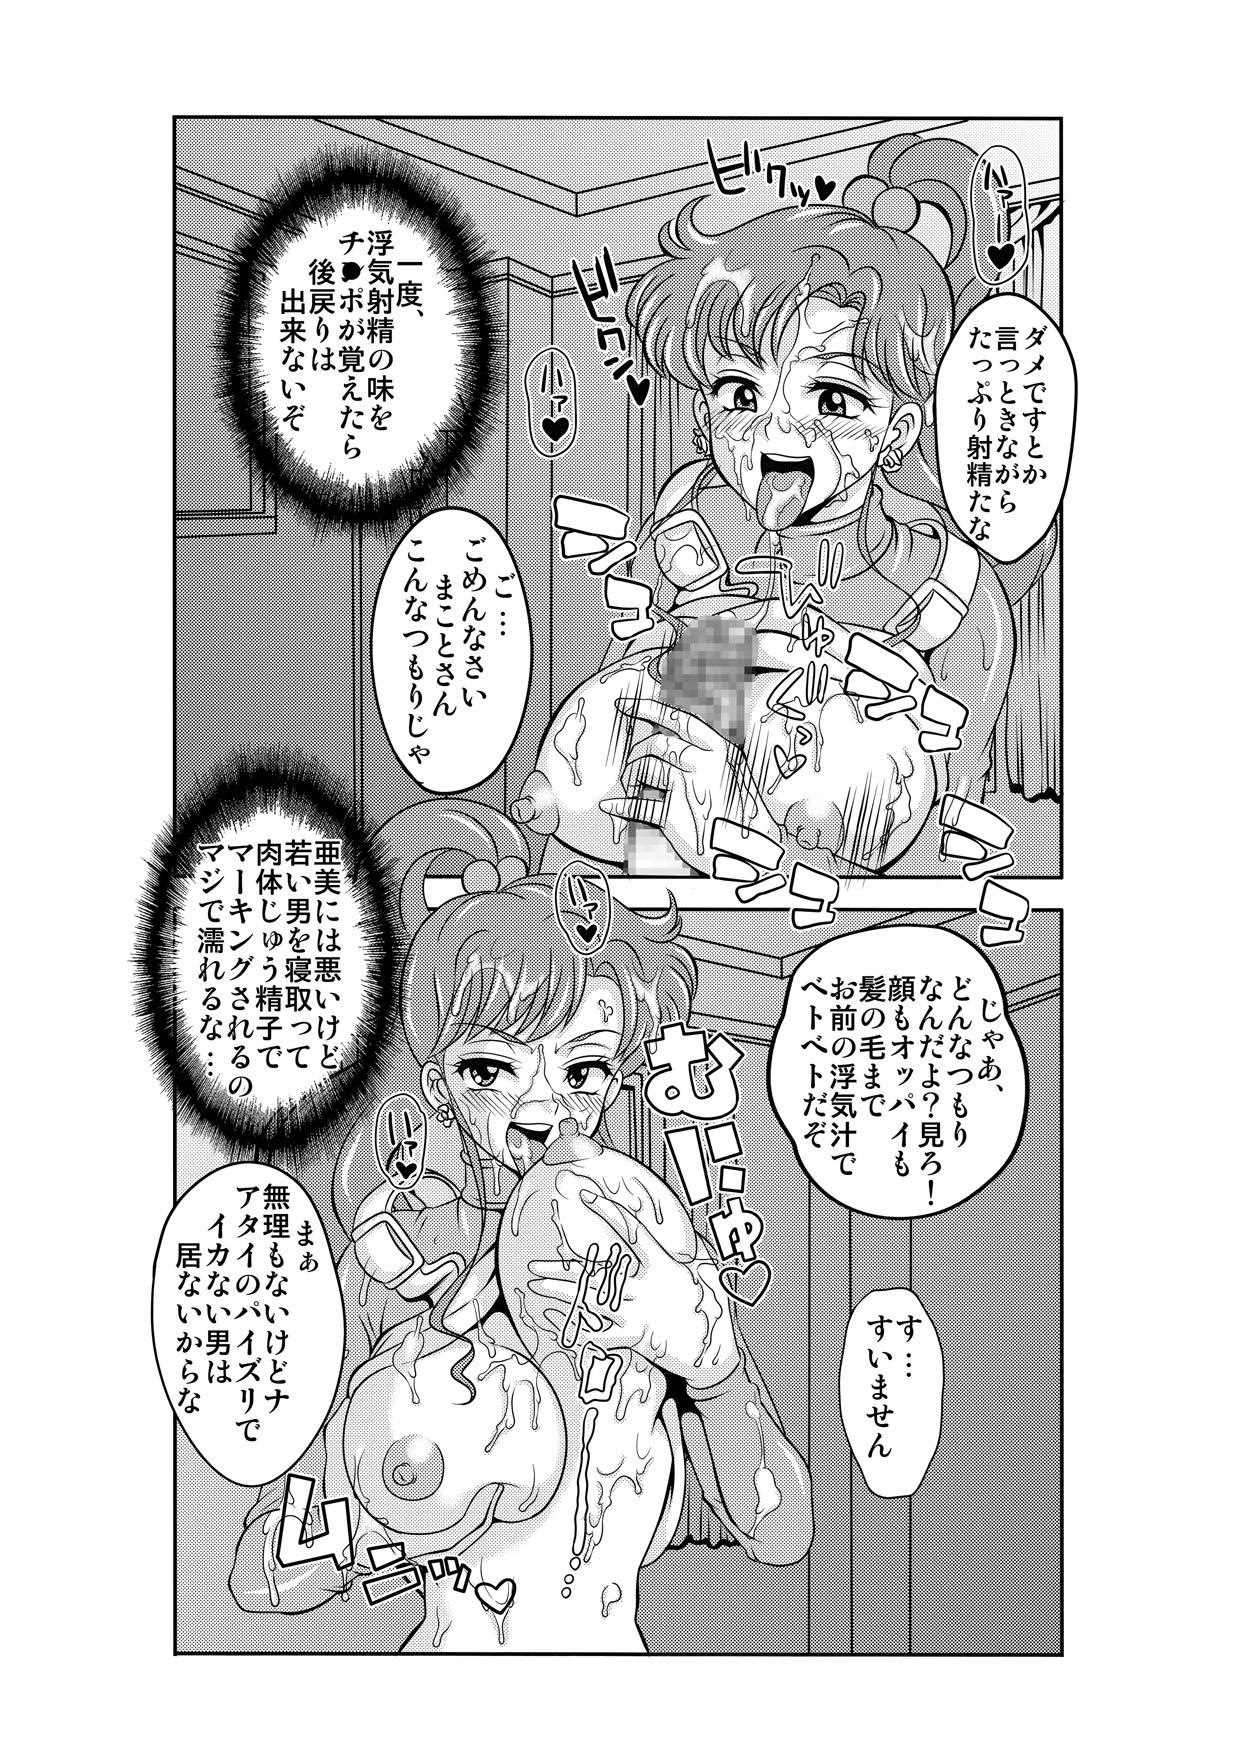 Fun Netori Netorare Toshiue Cosplayer-tachi no Yuuwaku - Sailor moon Screaming - Page 10